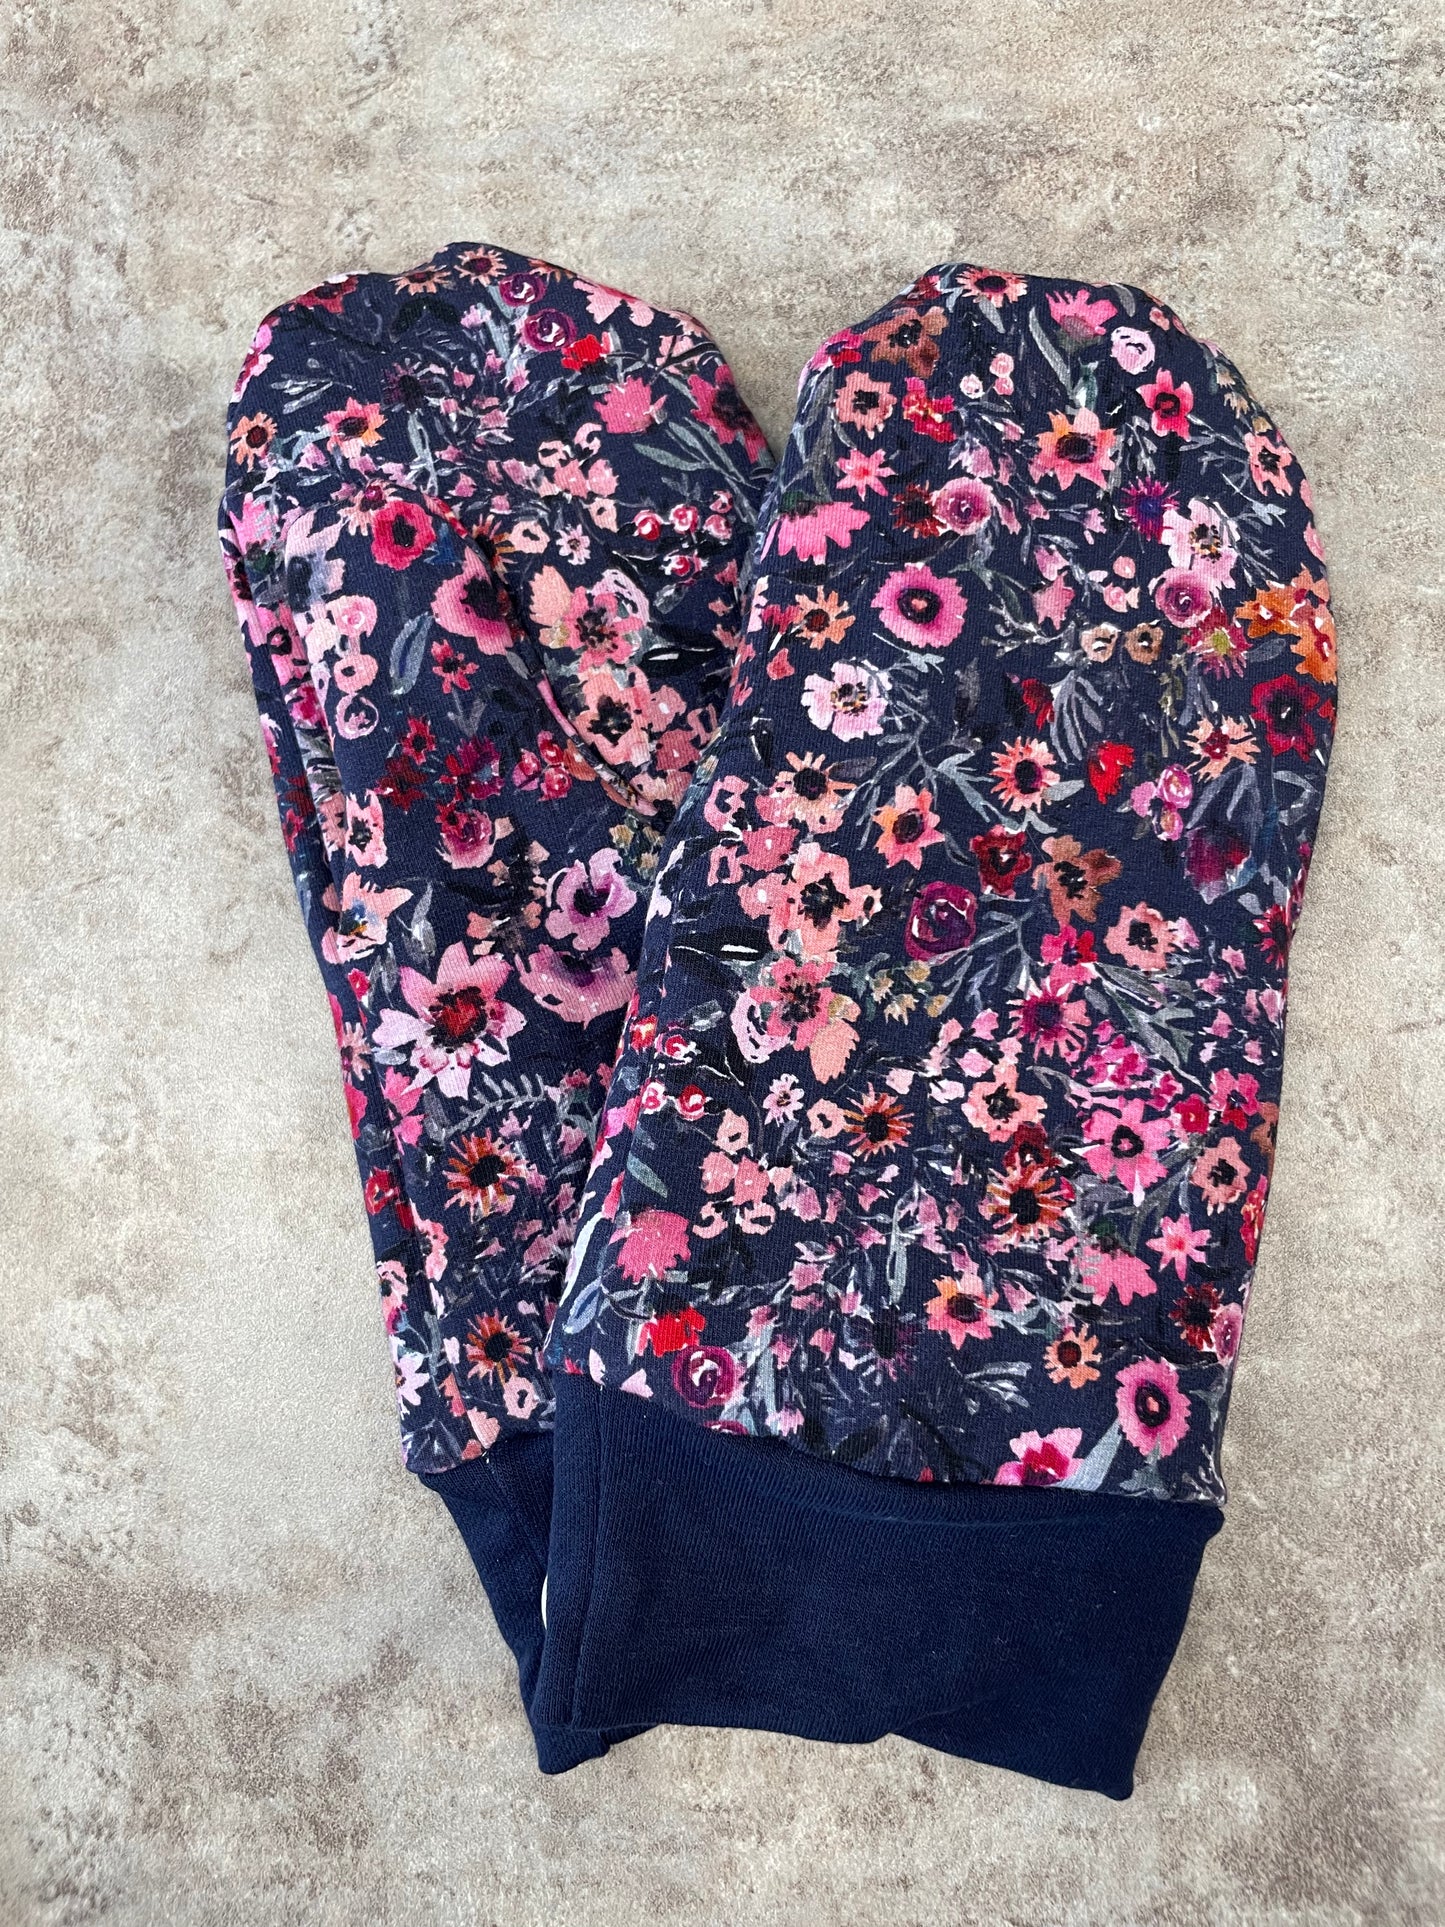 OAC Women’s Sweater Mittens - Wildflower